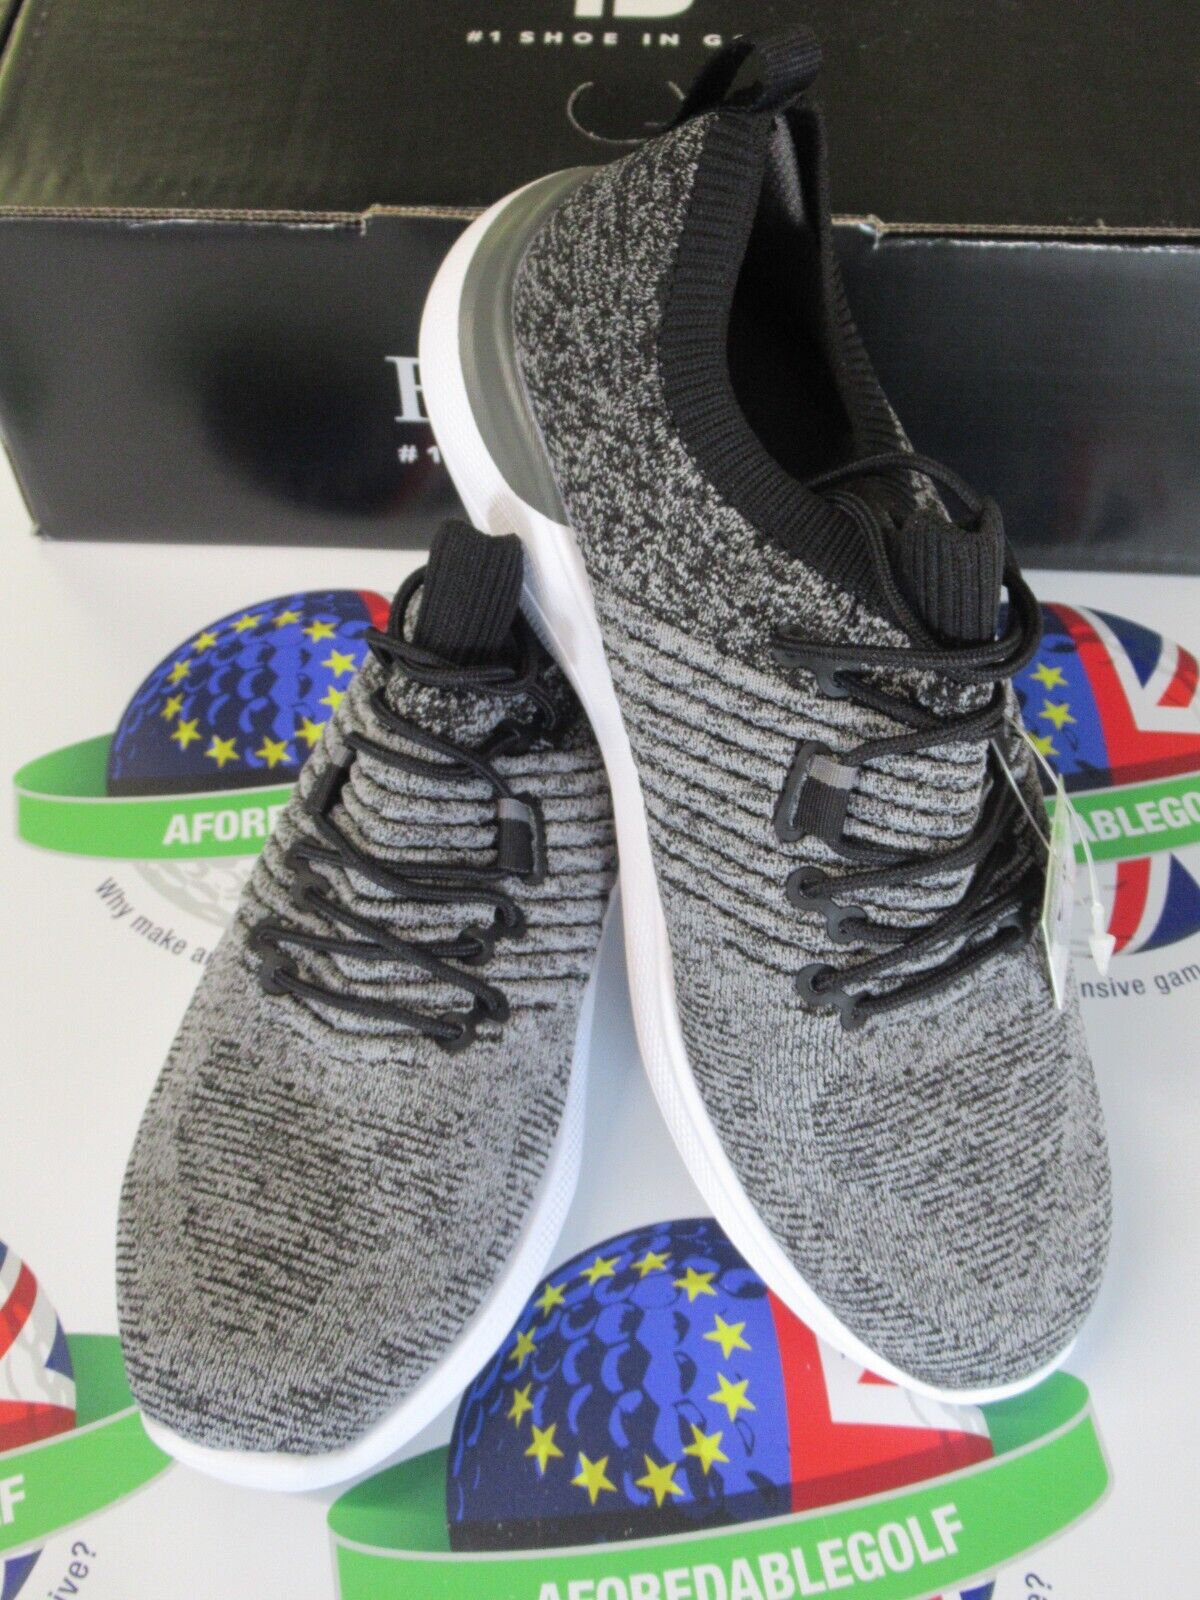 footjoy flex xp womens golf shoes black/grey 95336k uk size 7.5 medium